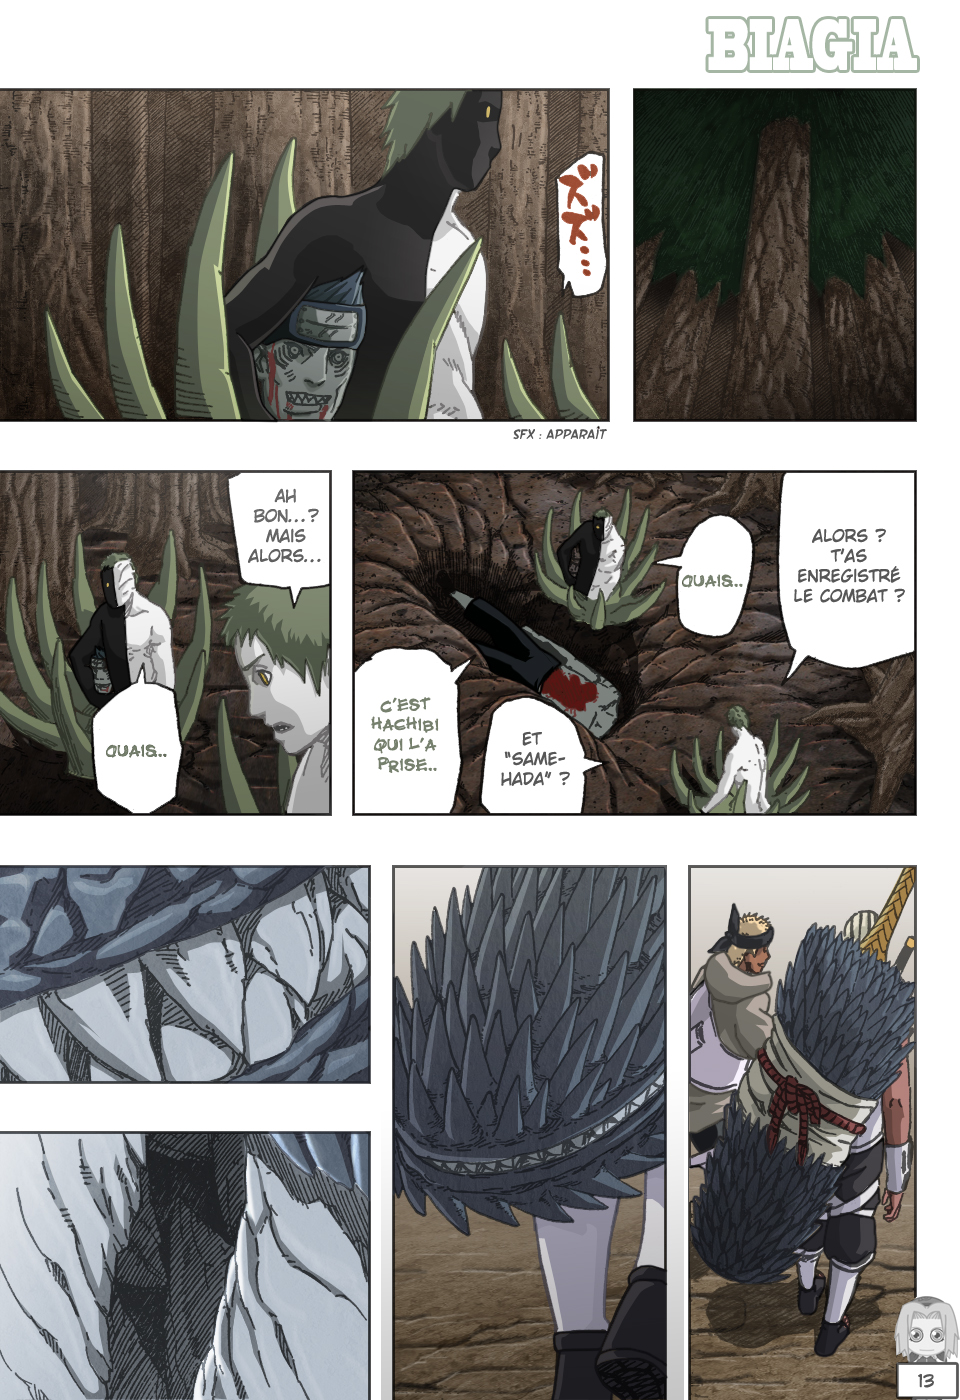 Naruto chapitre 487 colorisé - Page 13